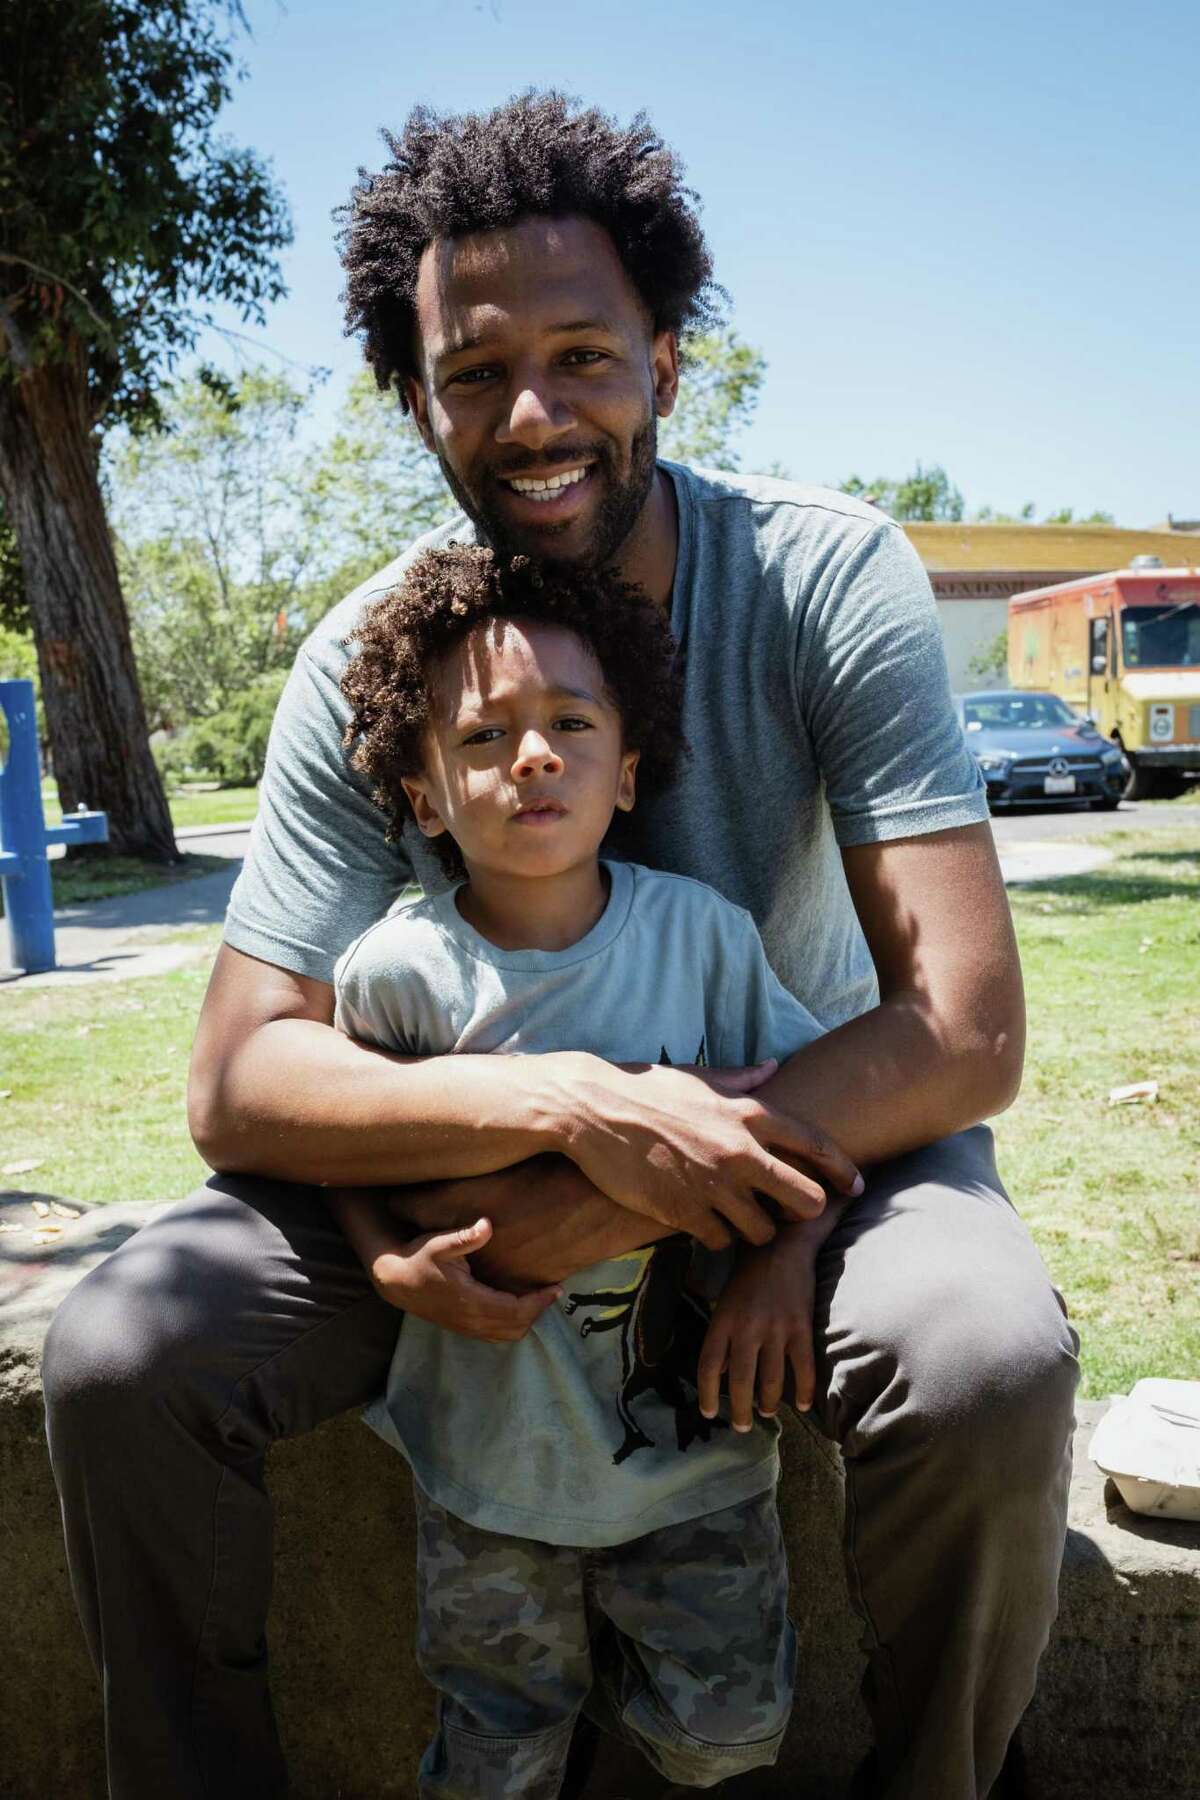 西奥·艾灵顿和他的儿子伦诺克斯在奥克兰举行的海湾黑人父亲聚会上。艾灵顿是参加2020年首届活动的150名父亲之一。他帮助组织者路易斯·凯撒组织了2022年的聚会。